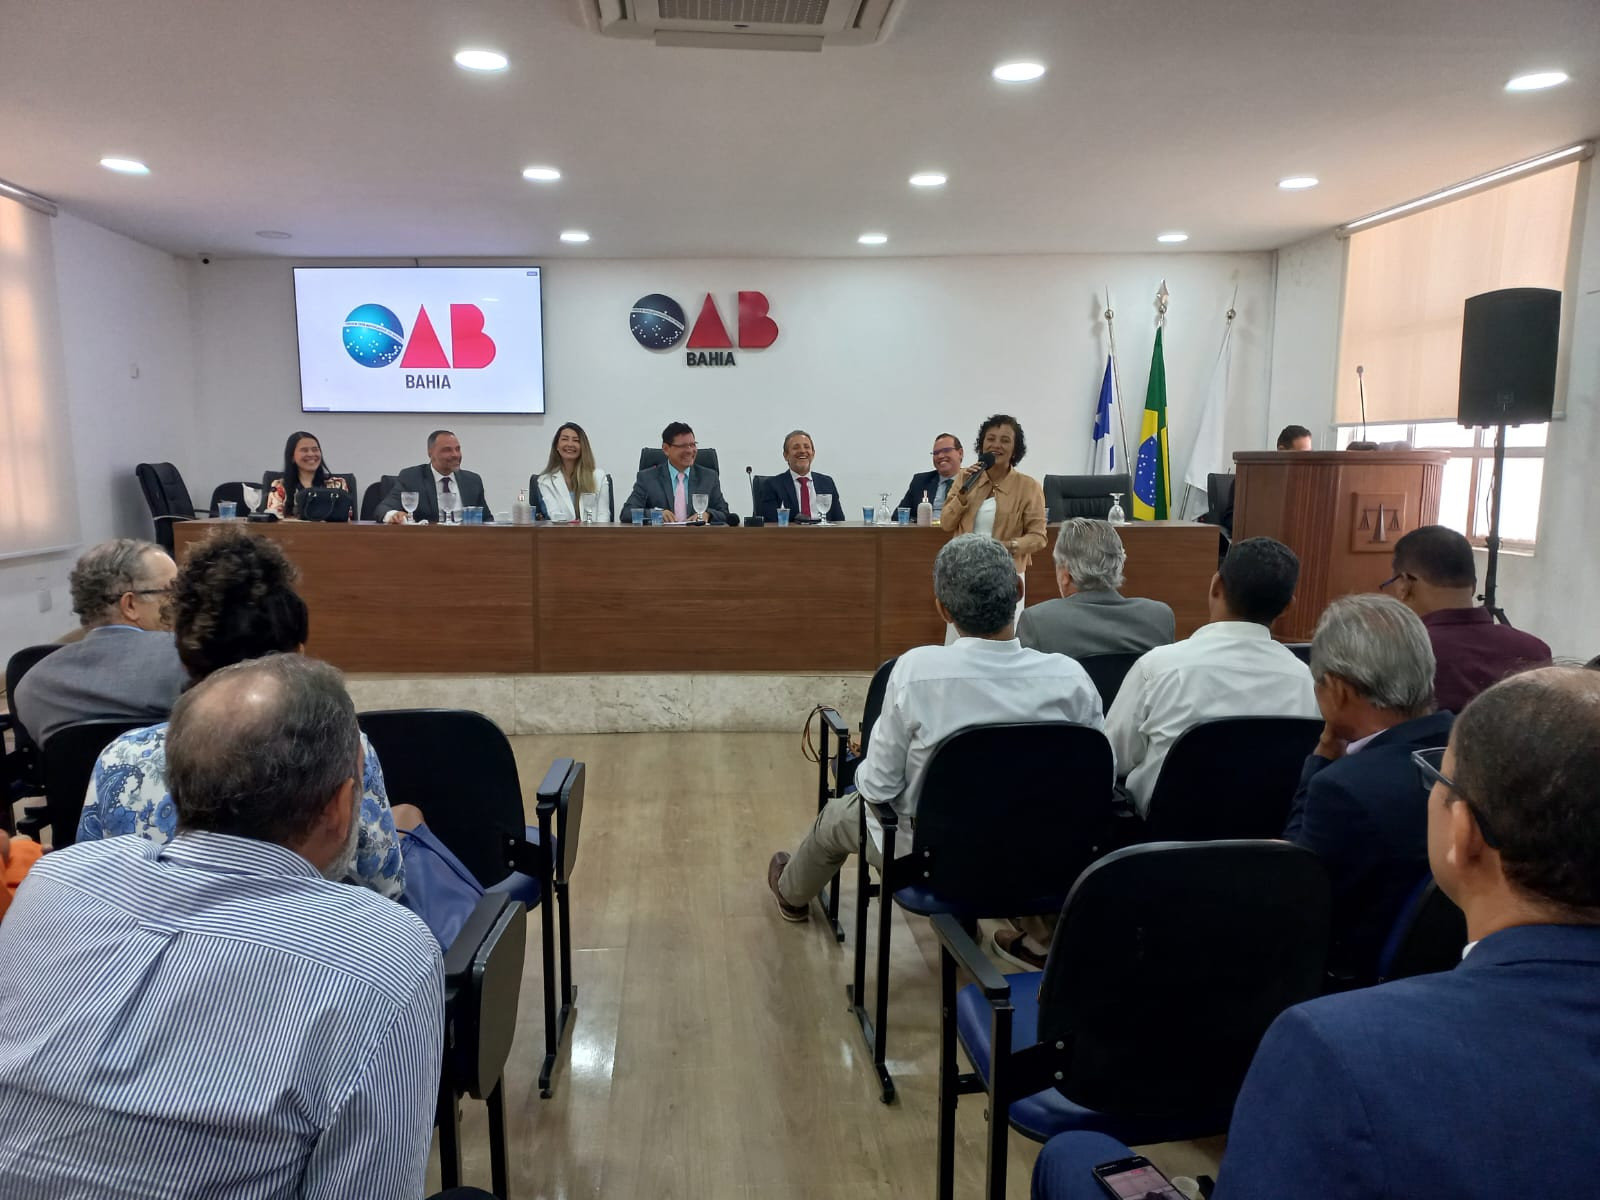 Na OAB, CTB-BA exalta Justiça do Trabalho e critica reforma trabalhista